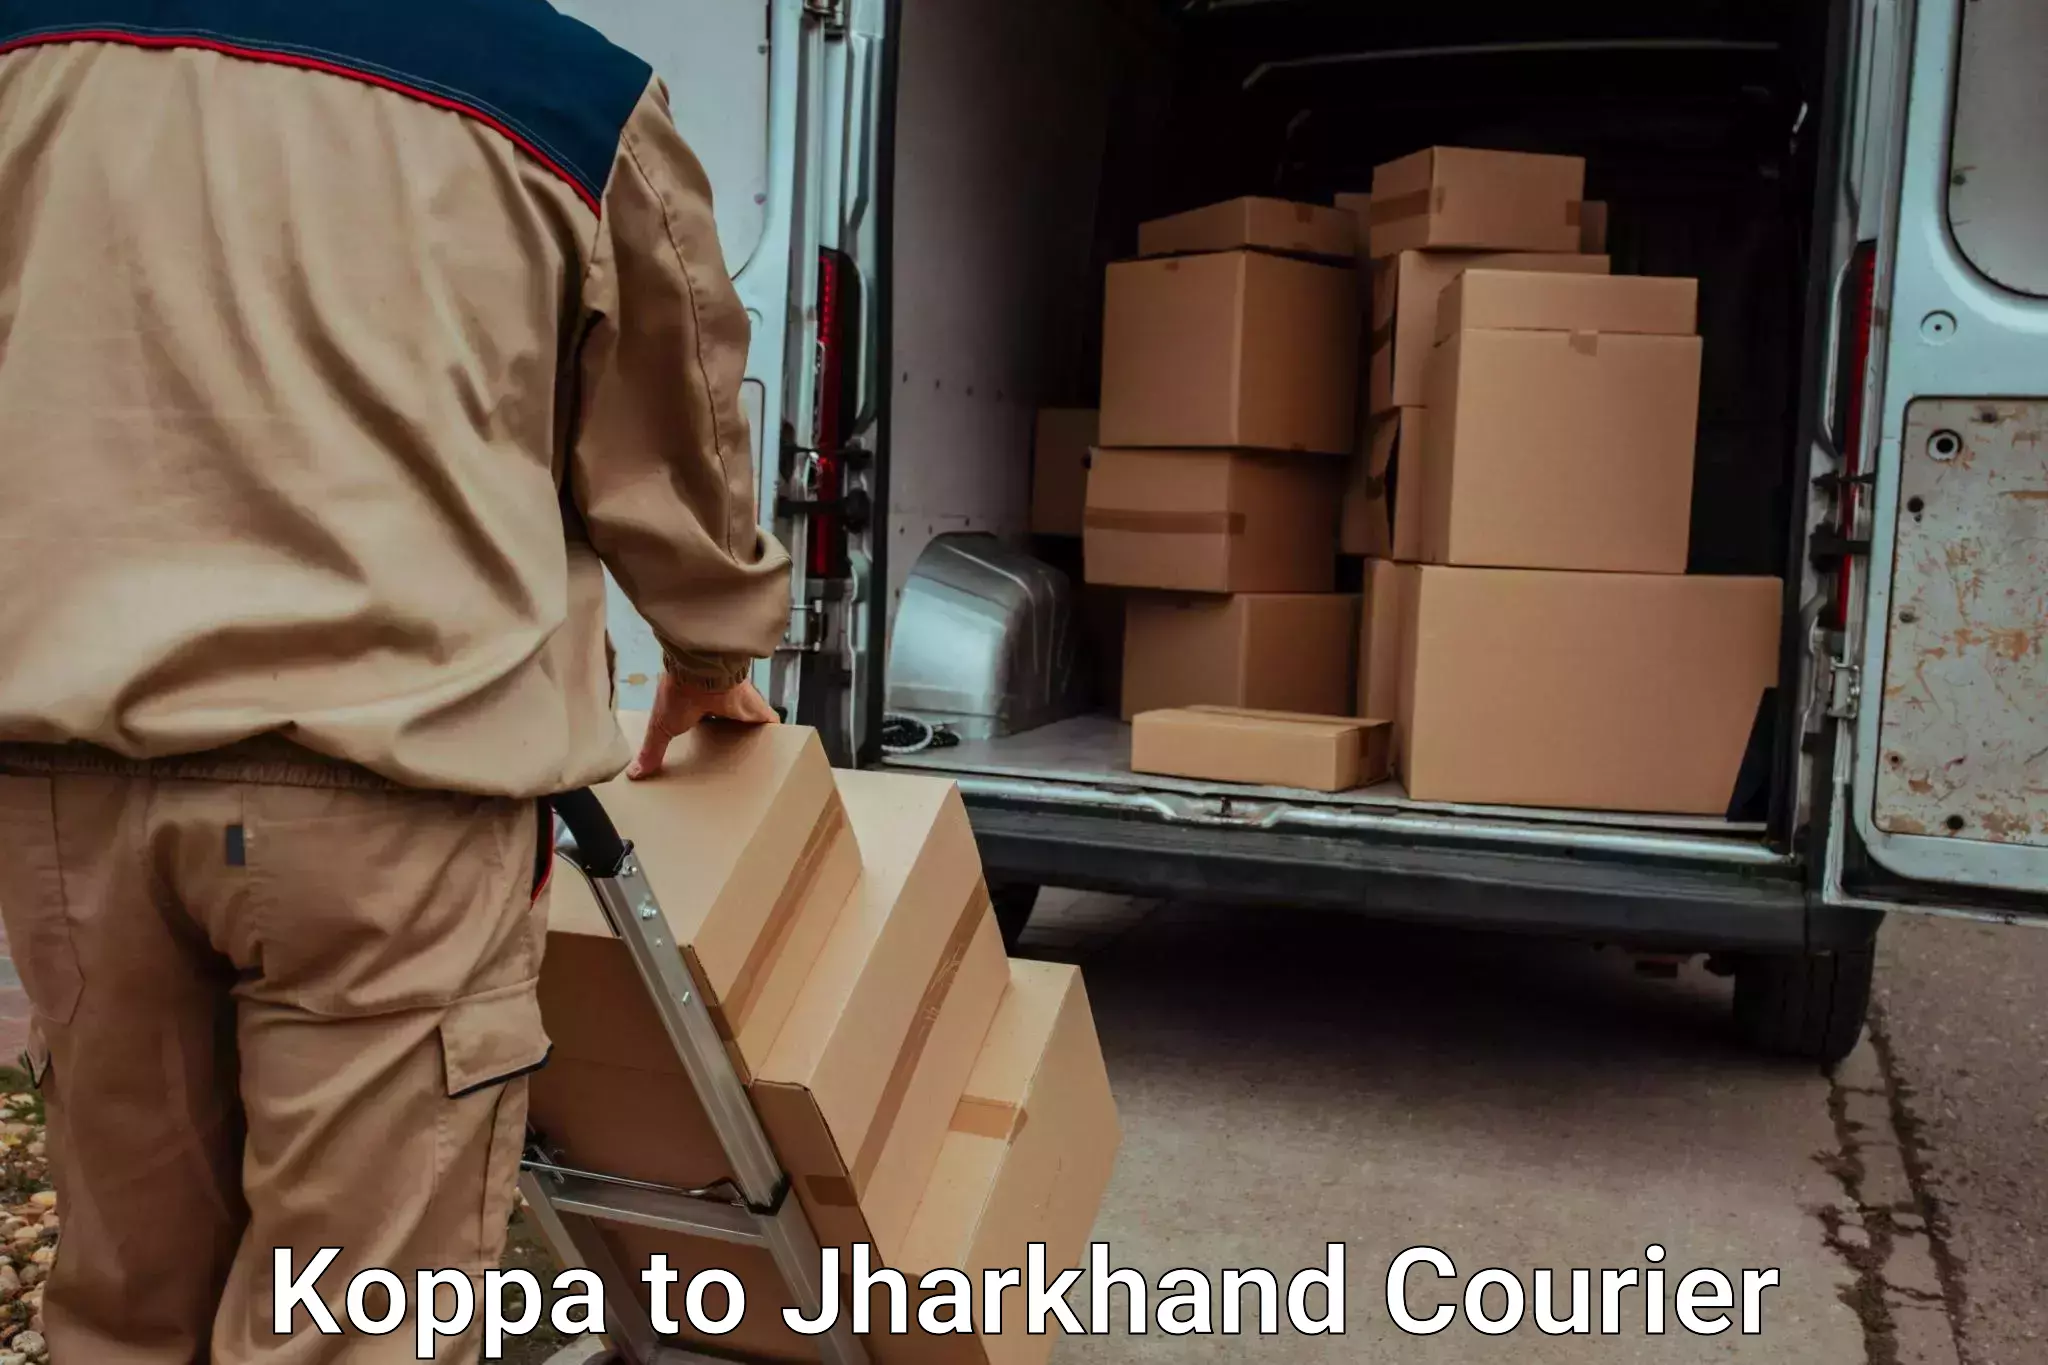 Furniture transport experts Koppa to Rajmahal